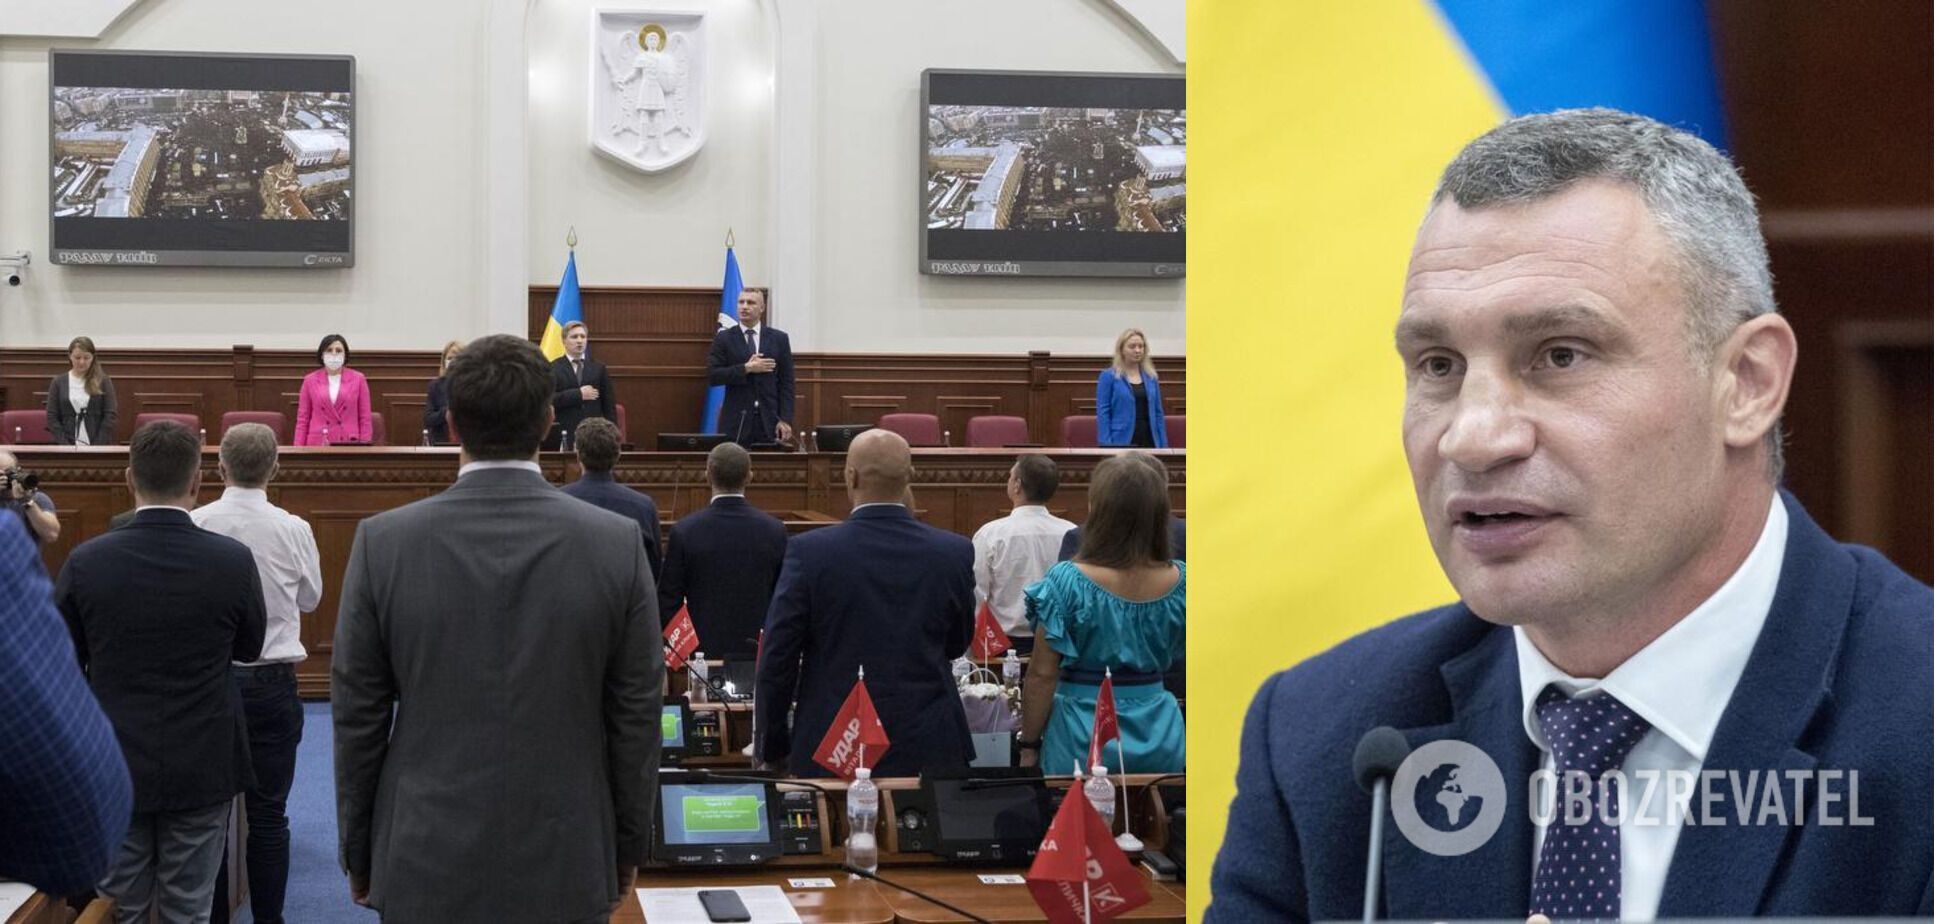 В случае принятия законопроекта о столице, мэром будет Кличко, а главу КГГА будет назначать президент